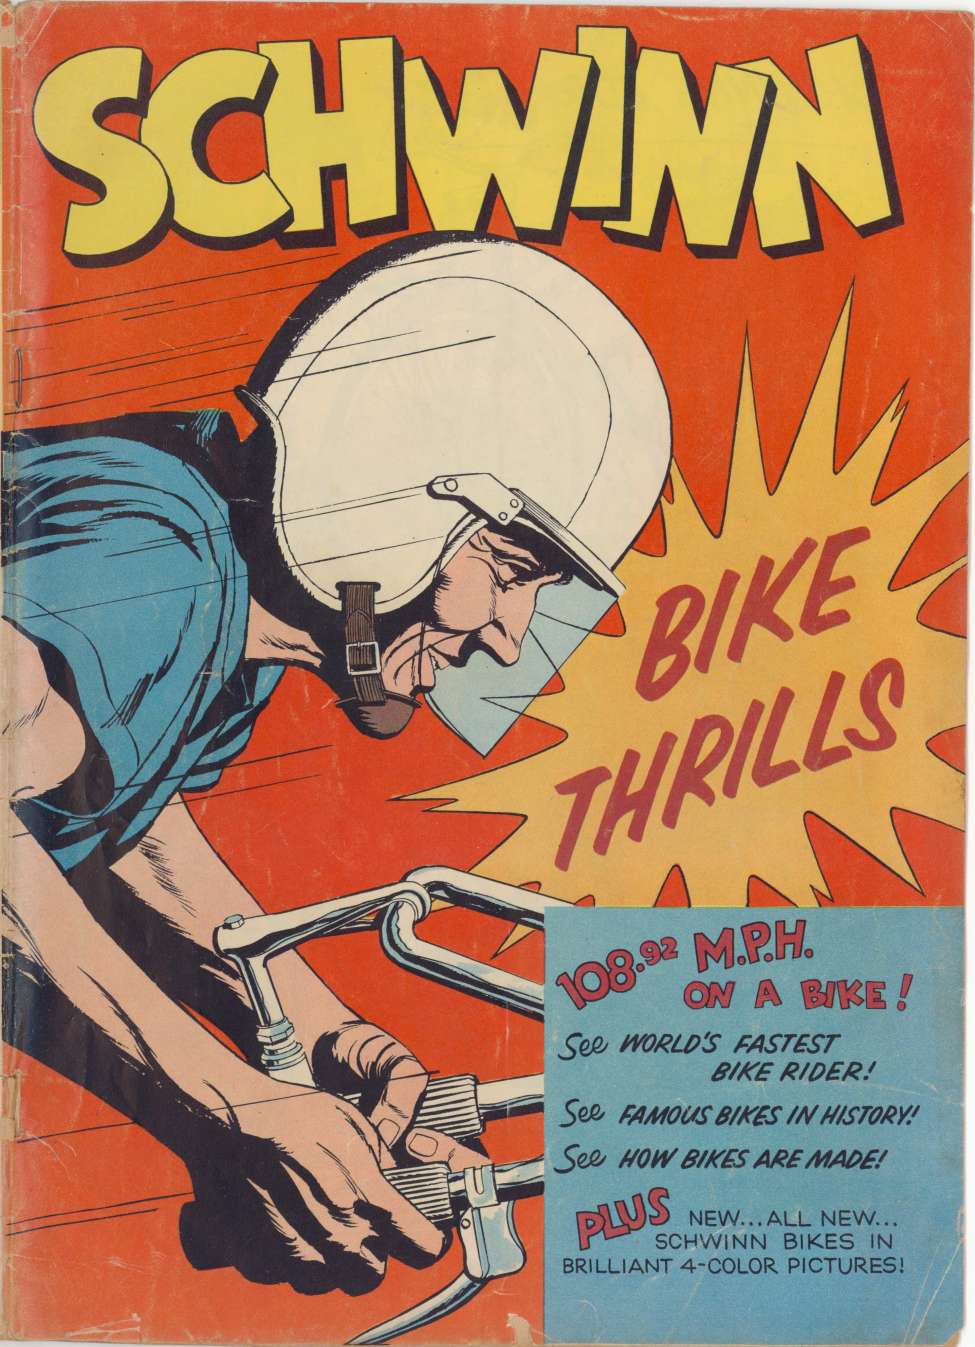 Book Cover For Schwinn Bike Thrills - Version 2